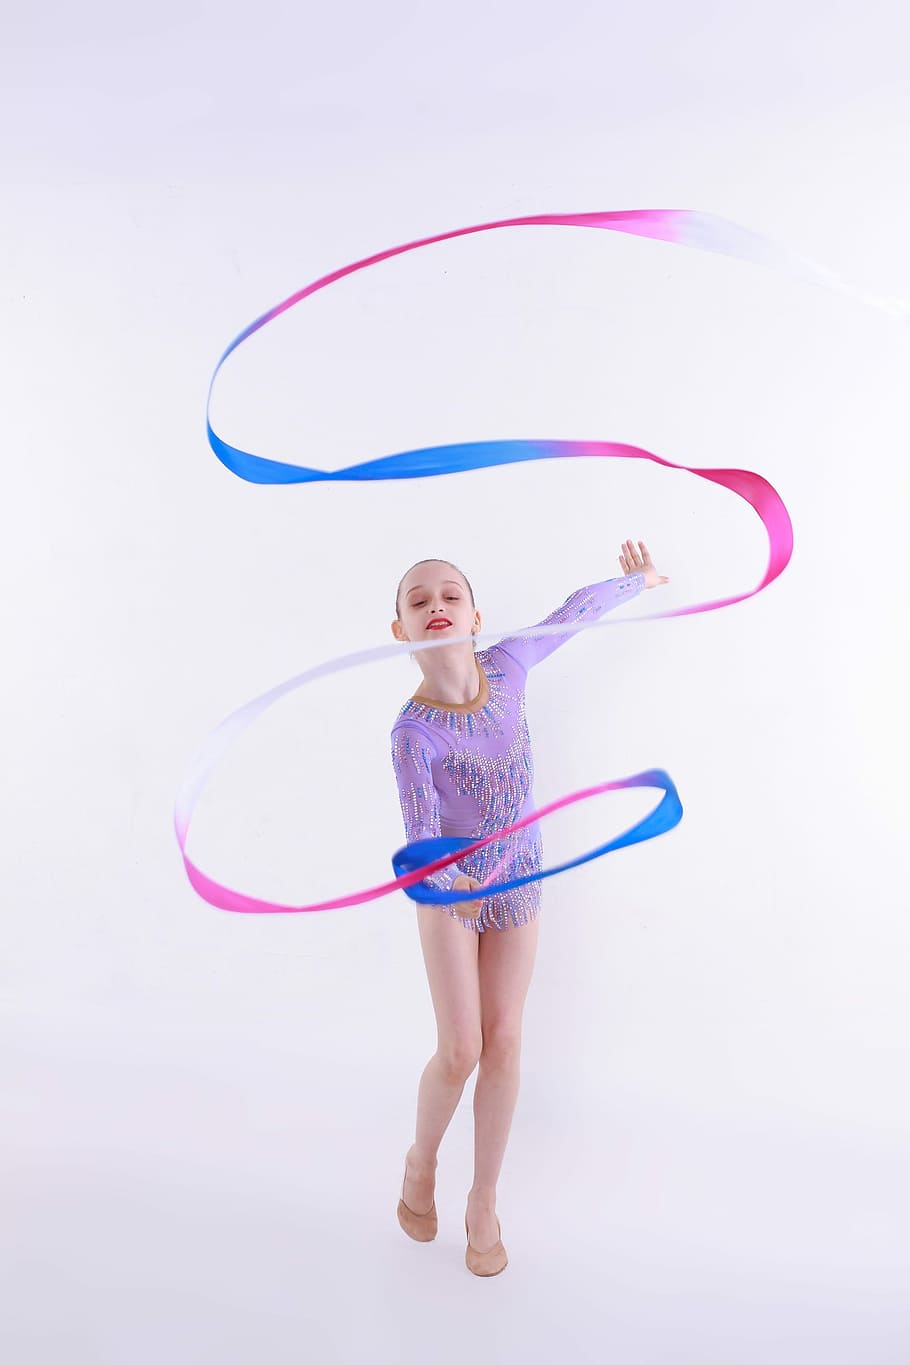 female, ribbon gymnast, holding, rsg, rhythmic sports gymnastics, gymnastics, girl, child, sports, dance